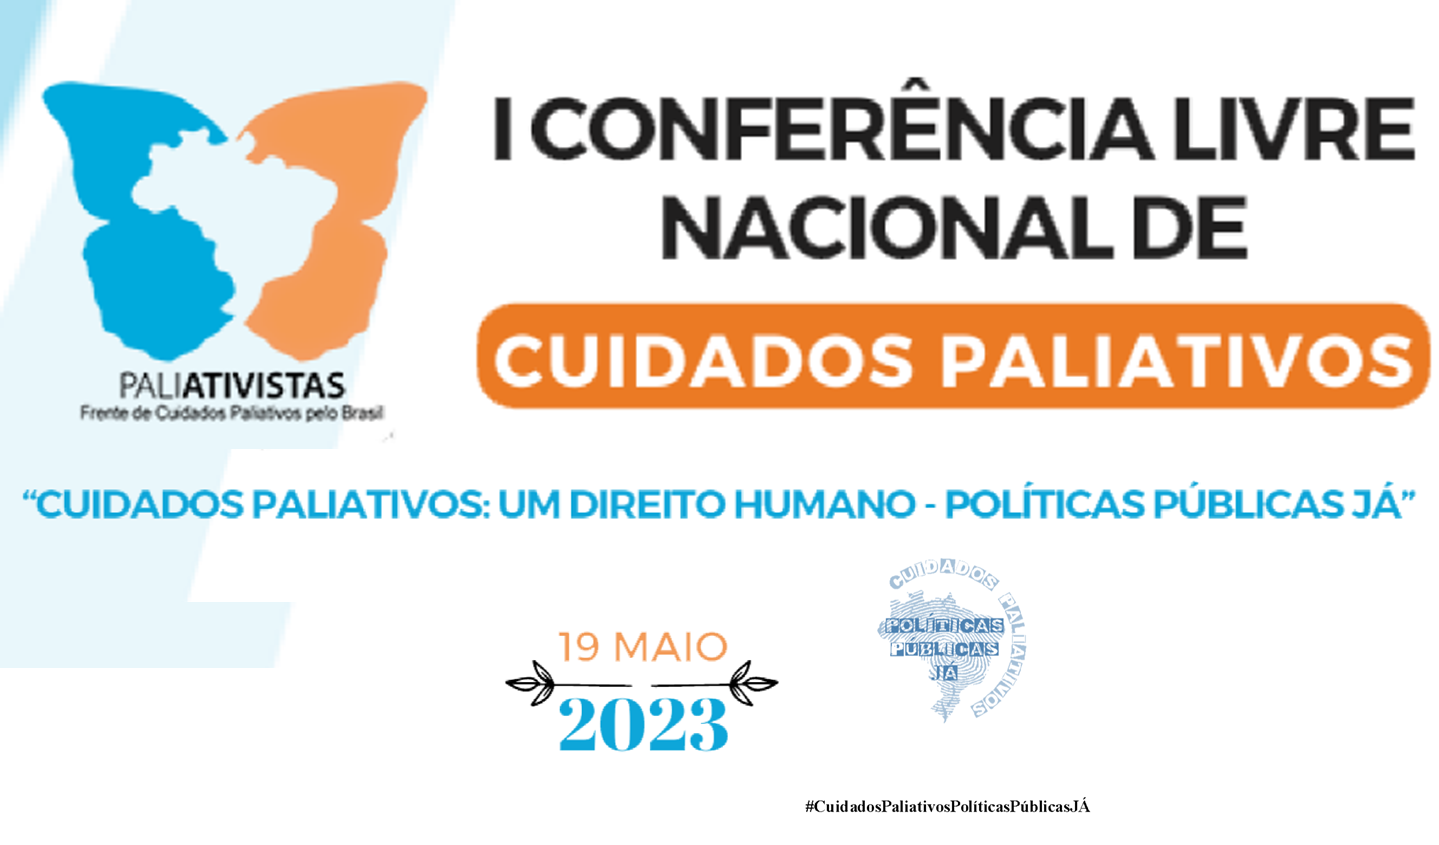 ANCP apoia a I Conferência Livre Nacional “Cuidados Paliativos: um direito humano – políticas públicas JÁ”